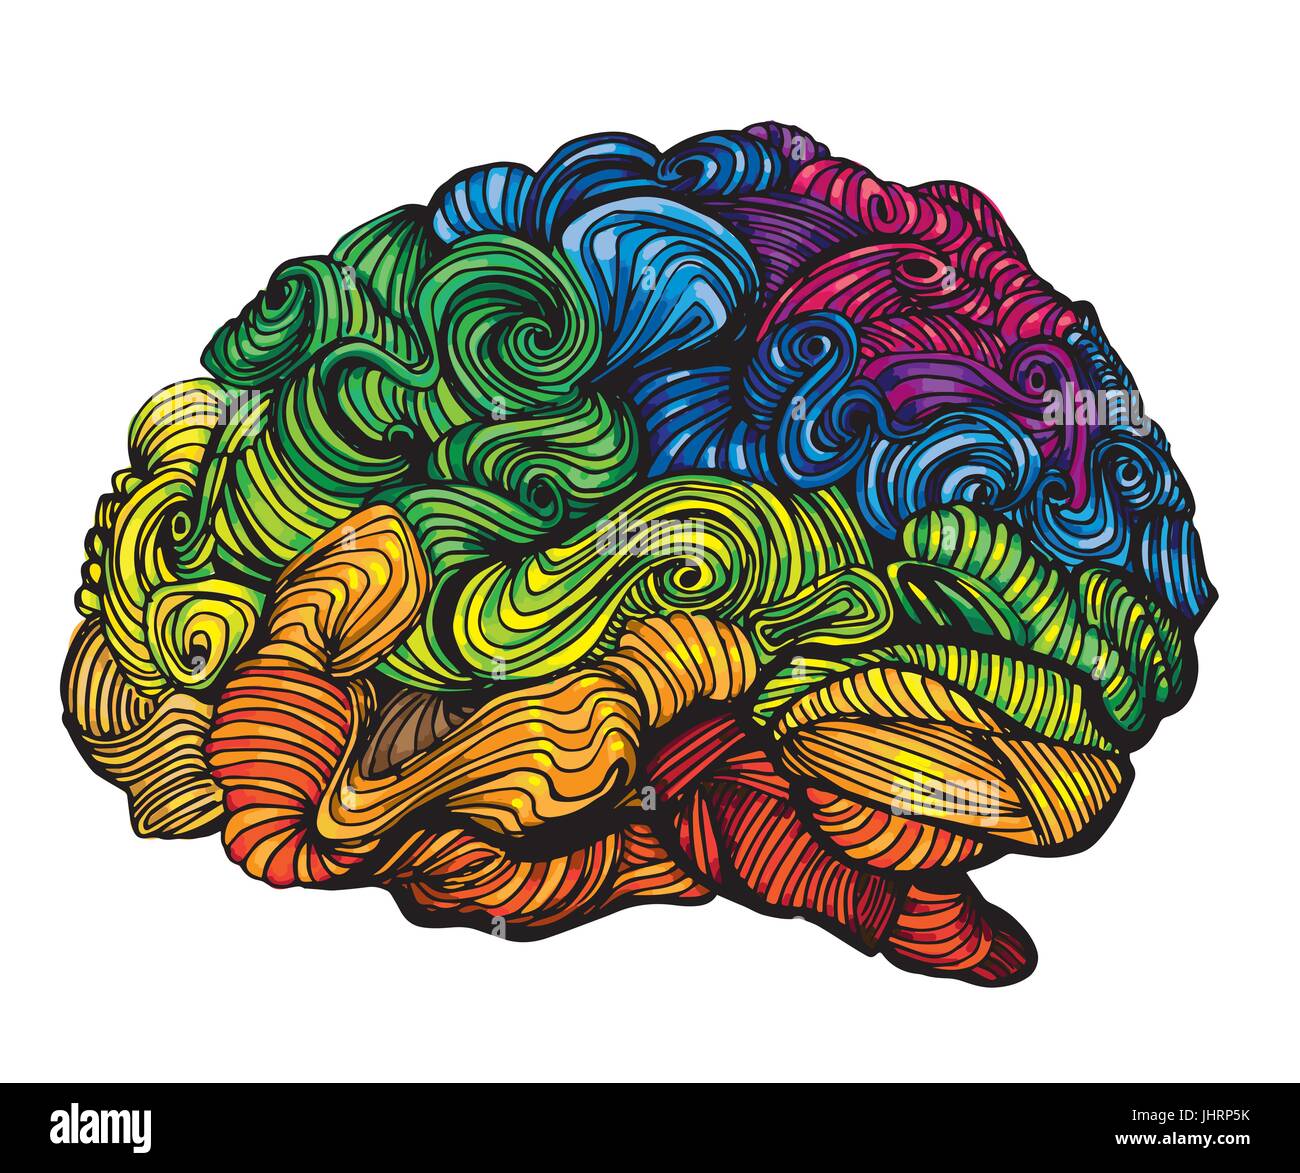 Cerveau idée illustration. Vecteur Doodle concept a propos de cerveau humain. Illustration créative avec la matière grise du cerveau et de couleur Illustration de Vecteur